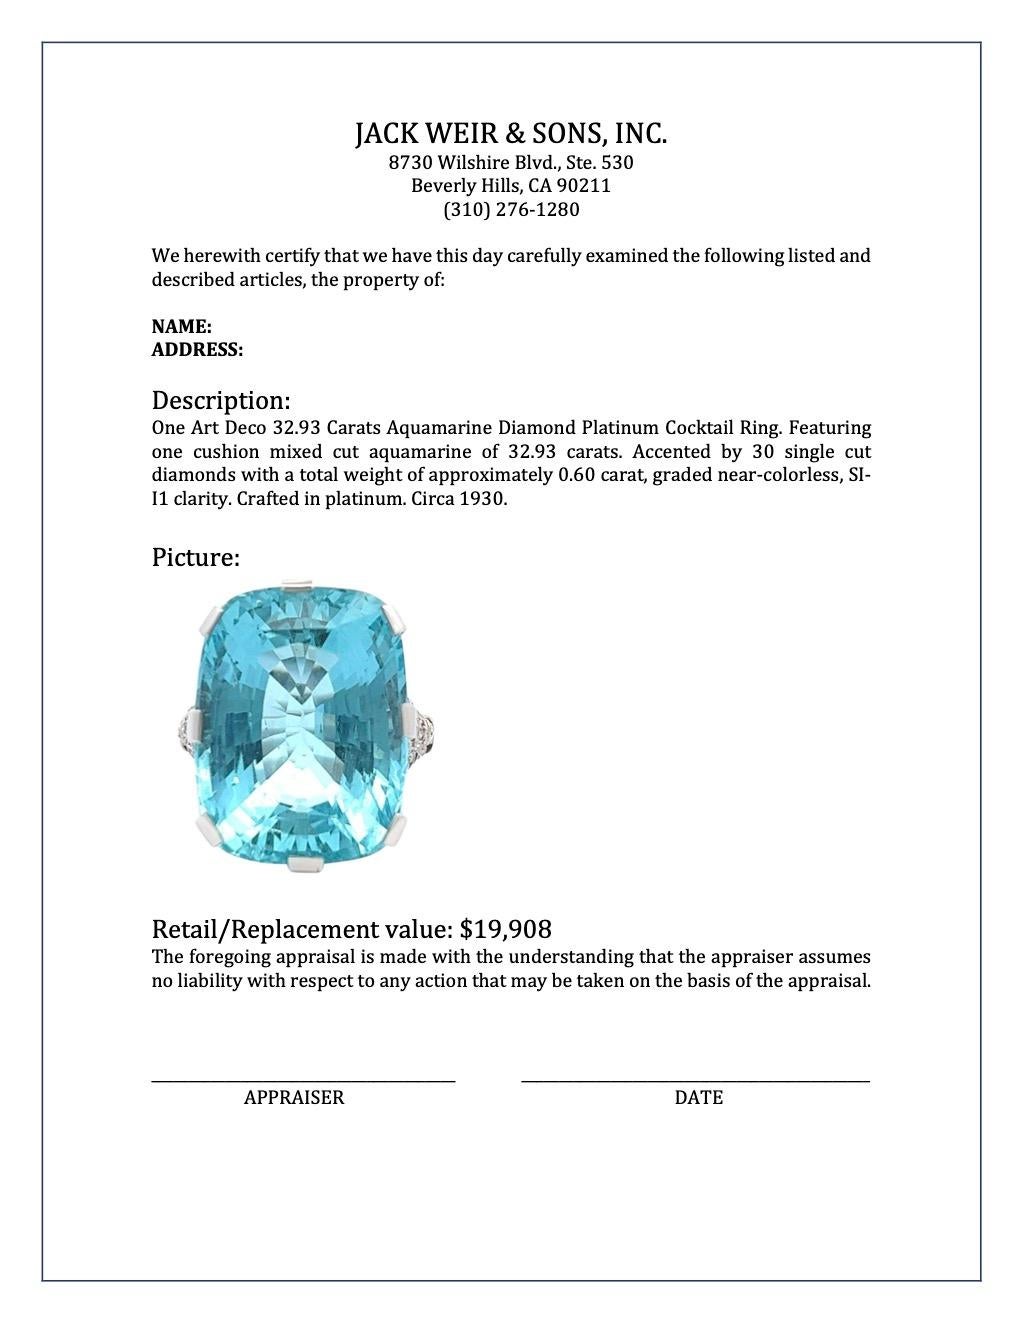 Art Deco 32.93 Carats Aquamarine Diamond Platinum Cocktail Ring 2